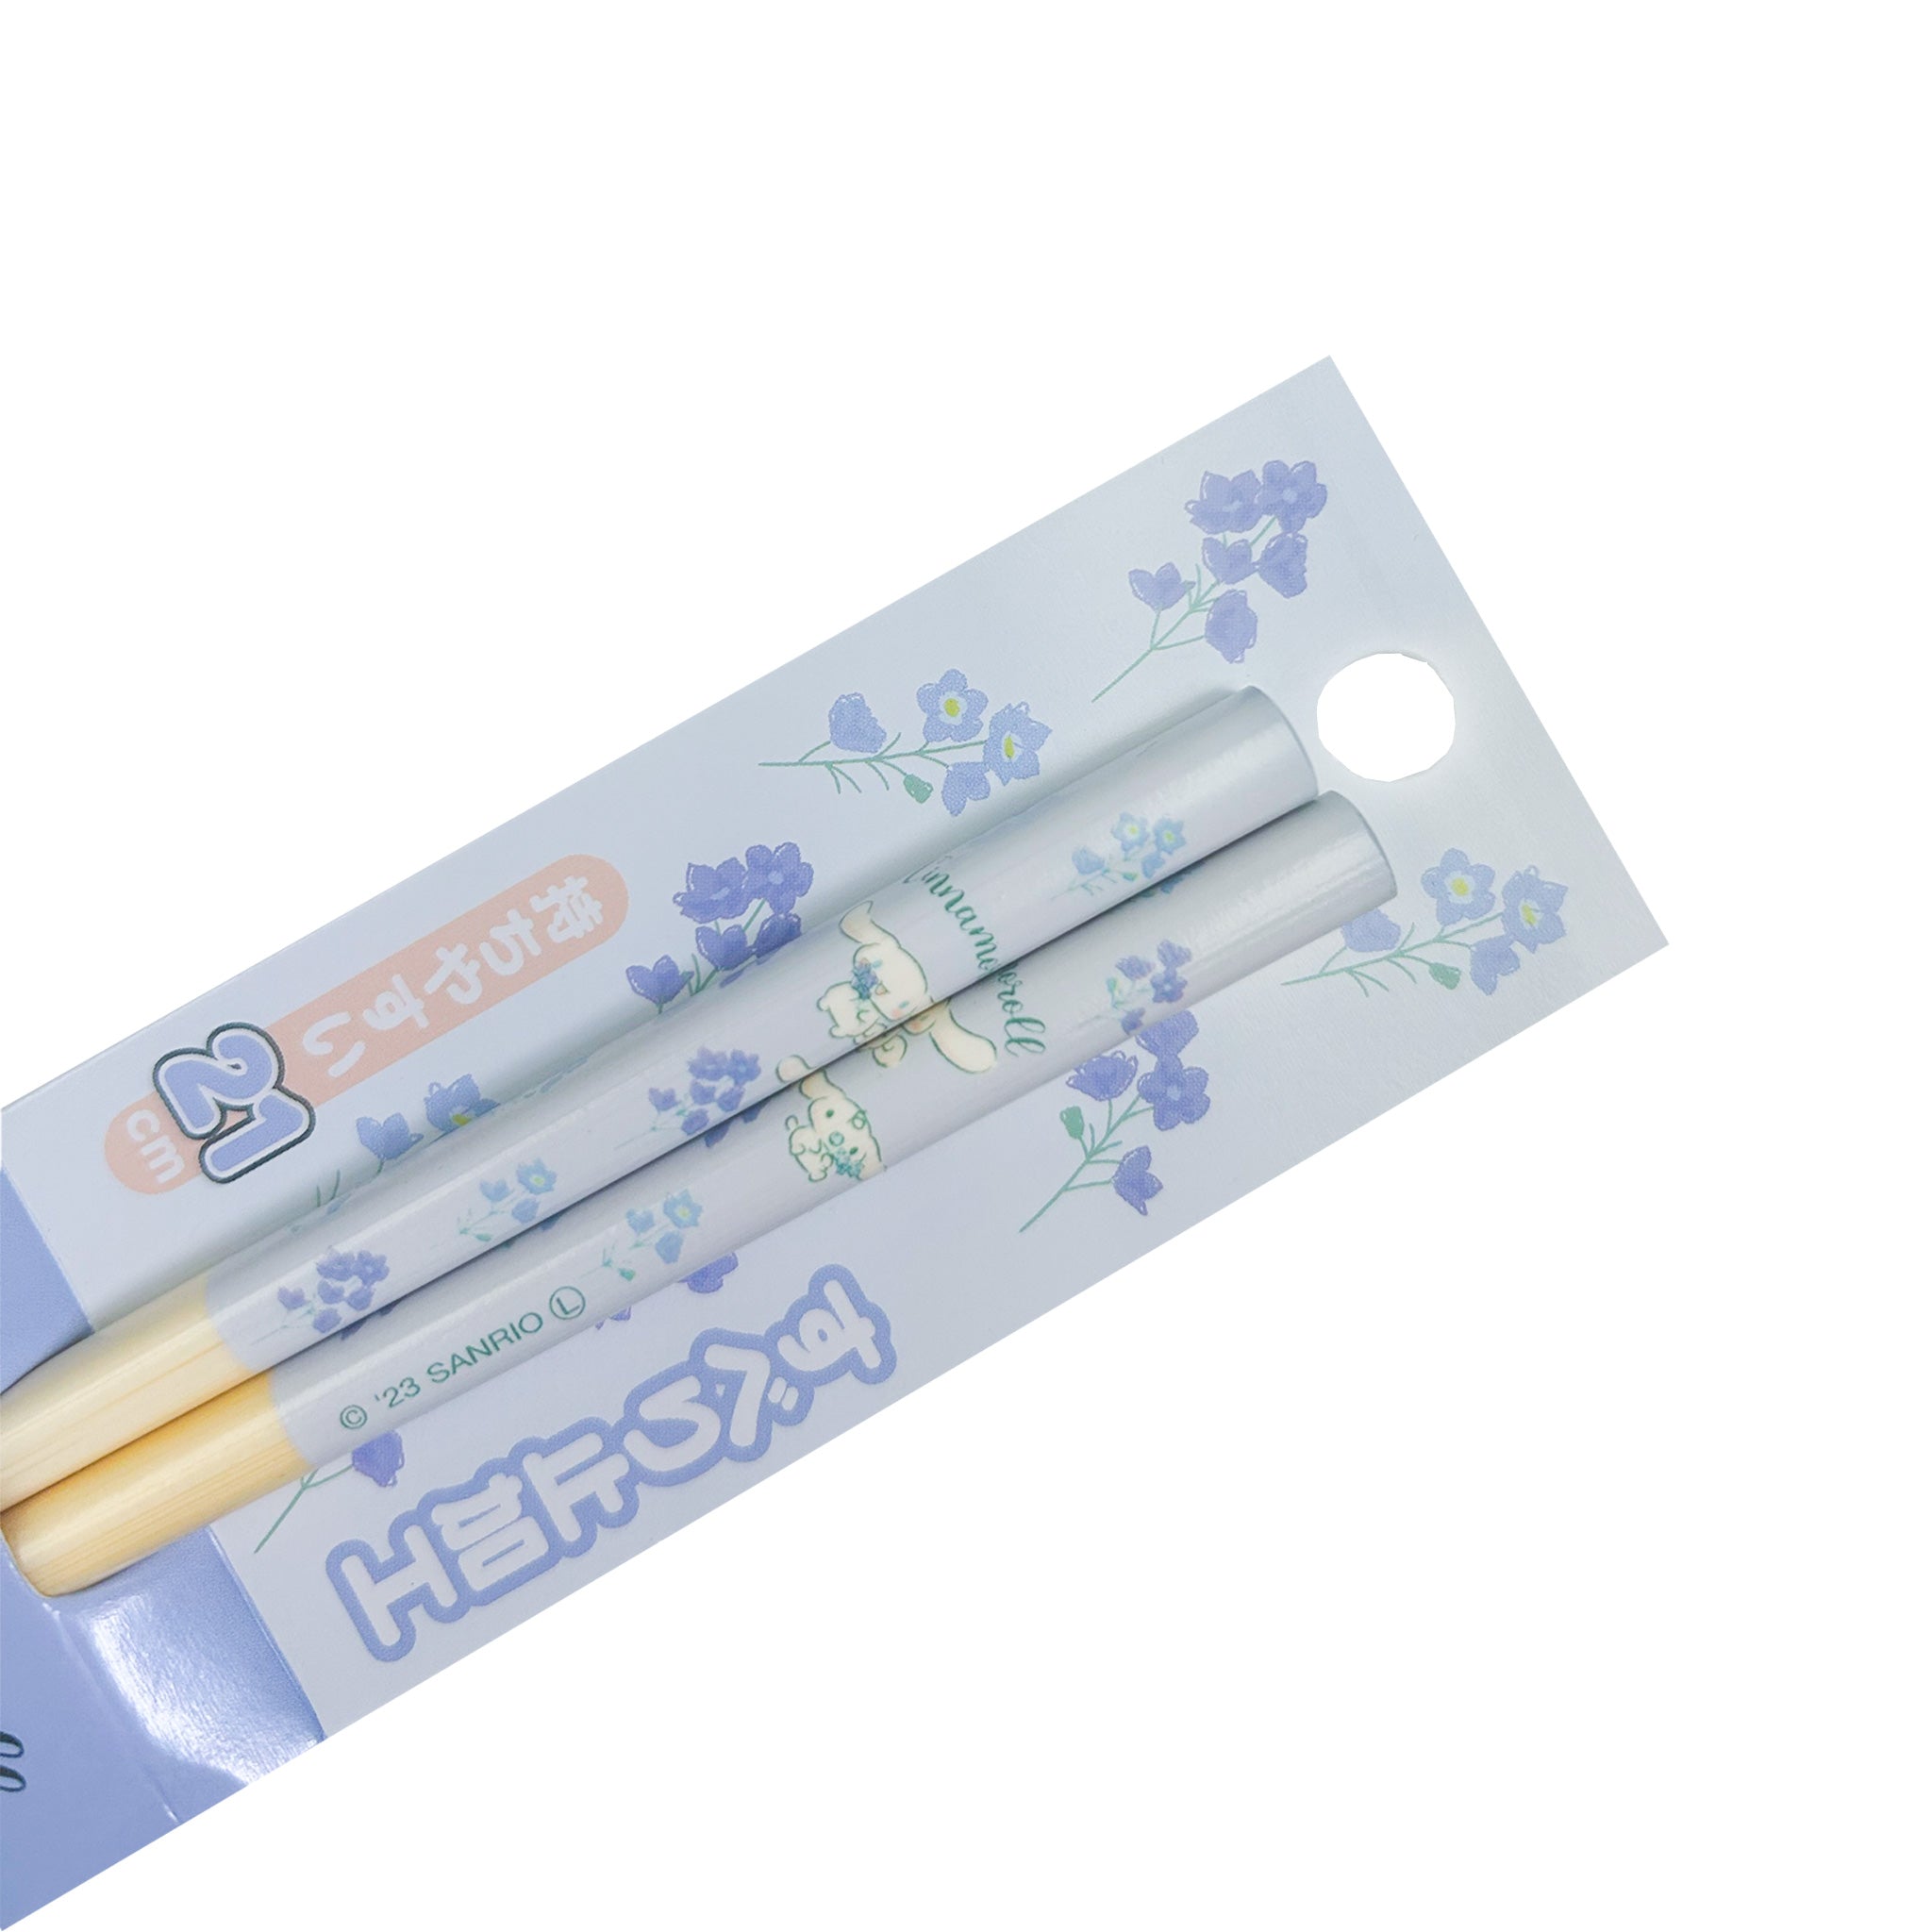 Sanrio Chopsticks 21cm